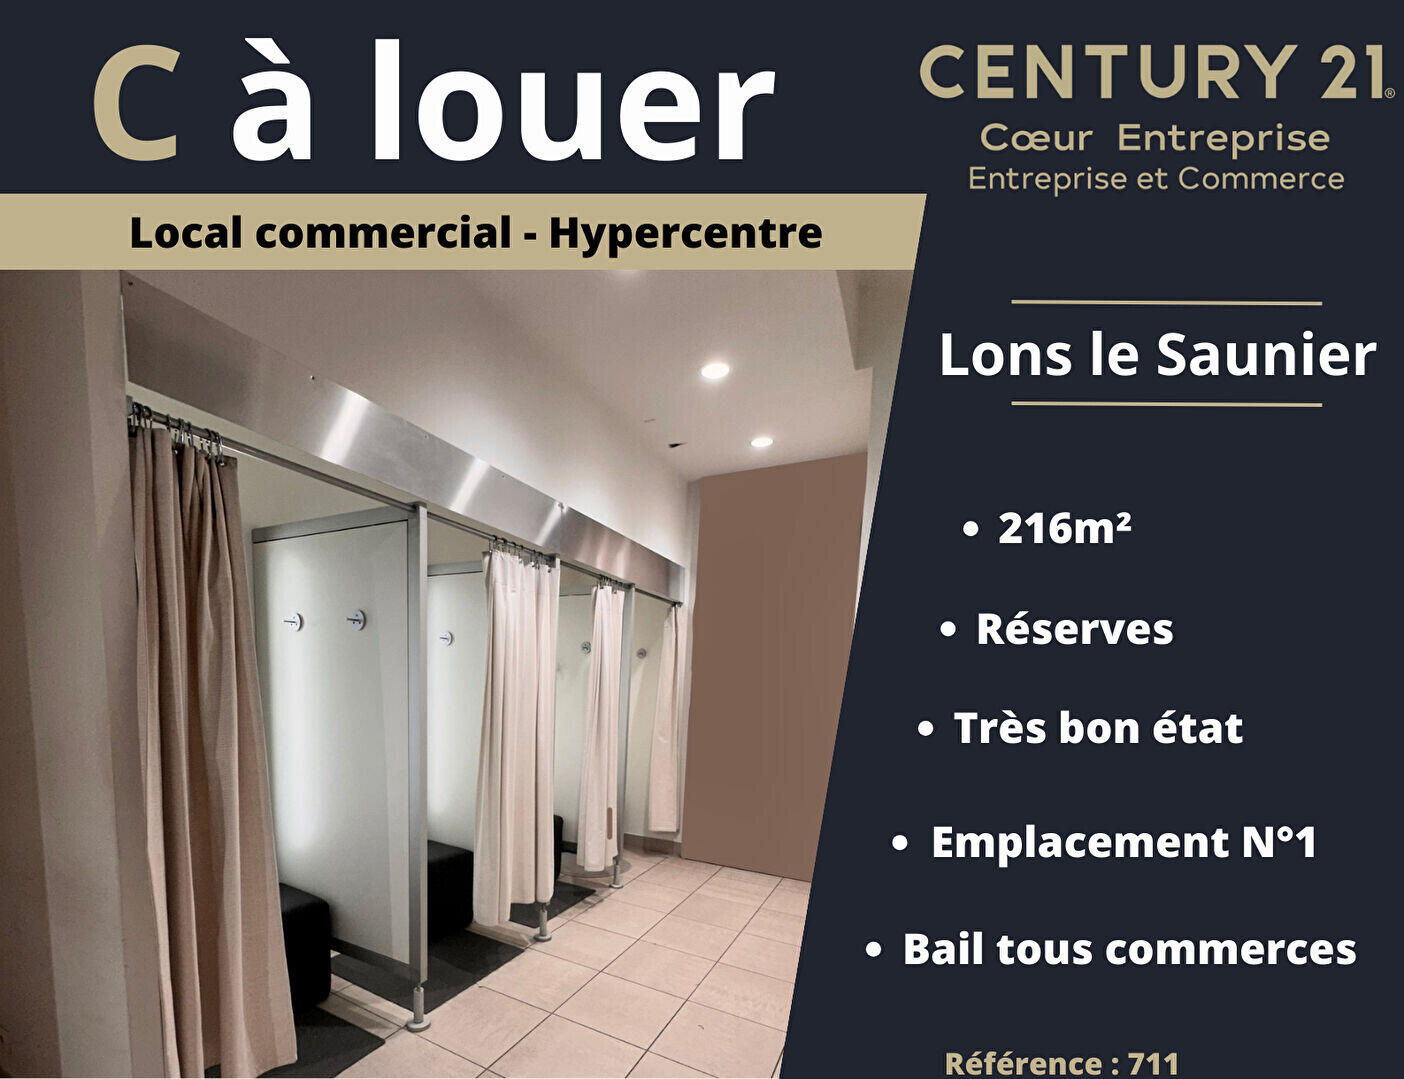 A louer local commercial 216m² hyper centre Lons